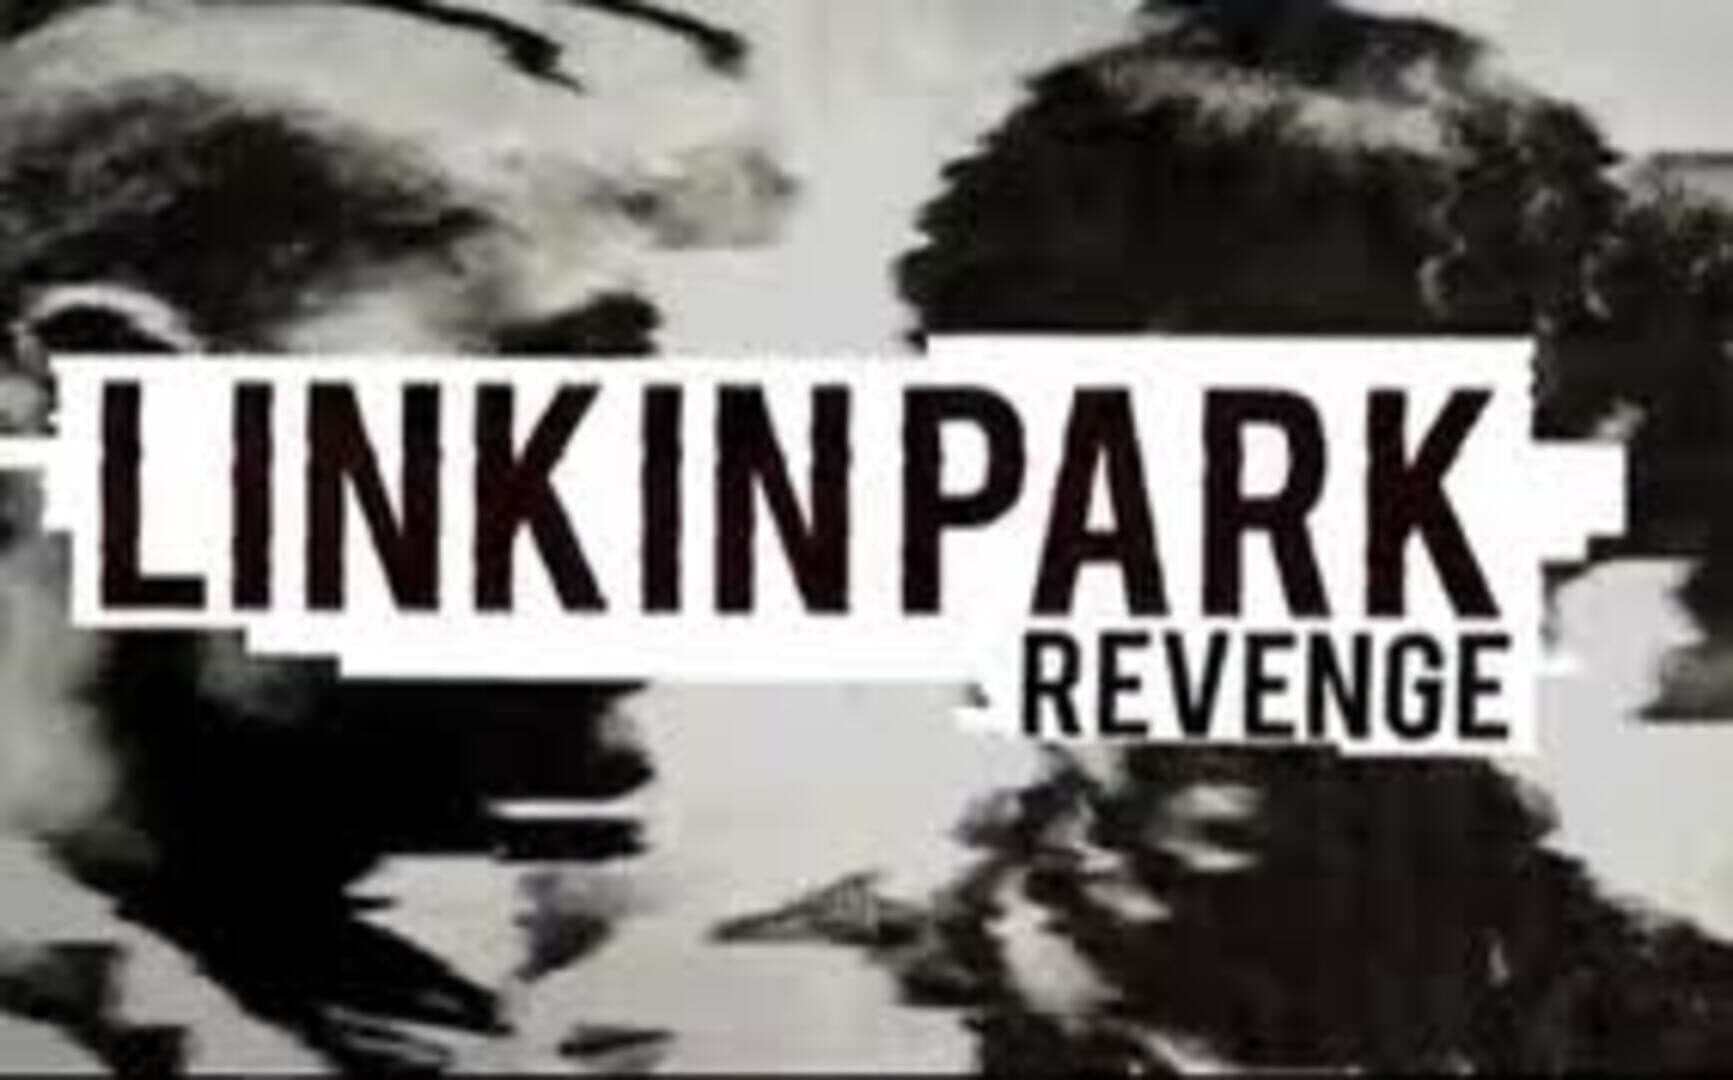 Linkin Park Revenge cover art